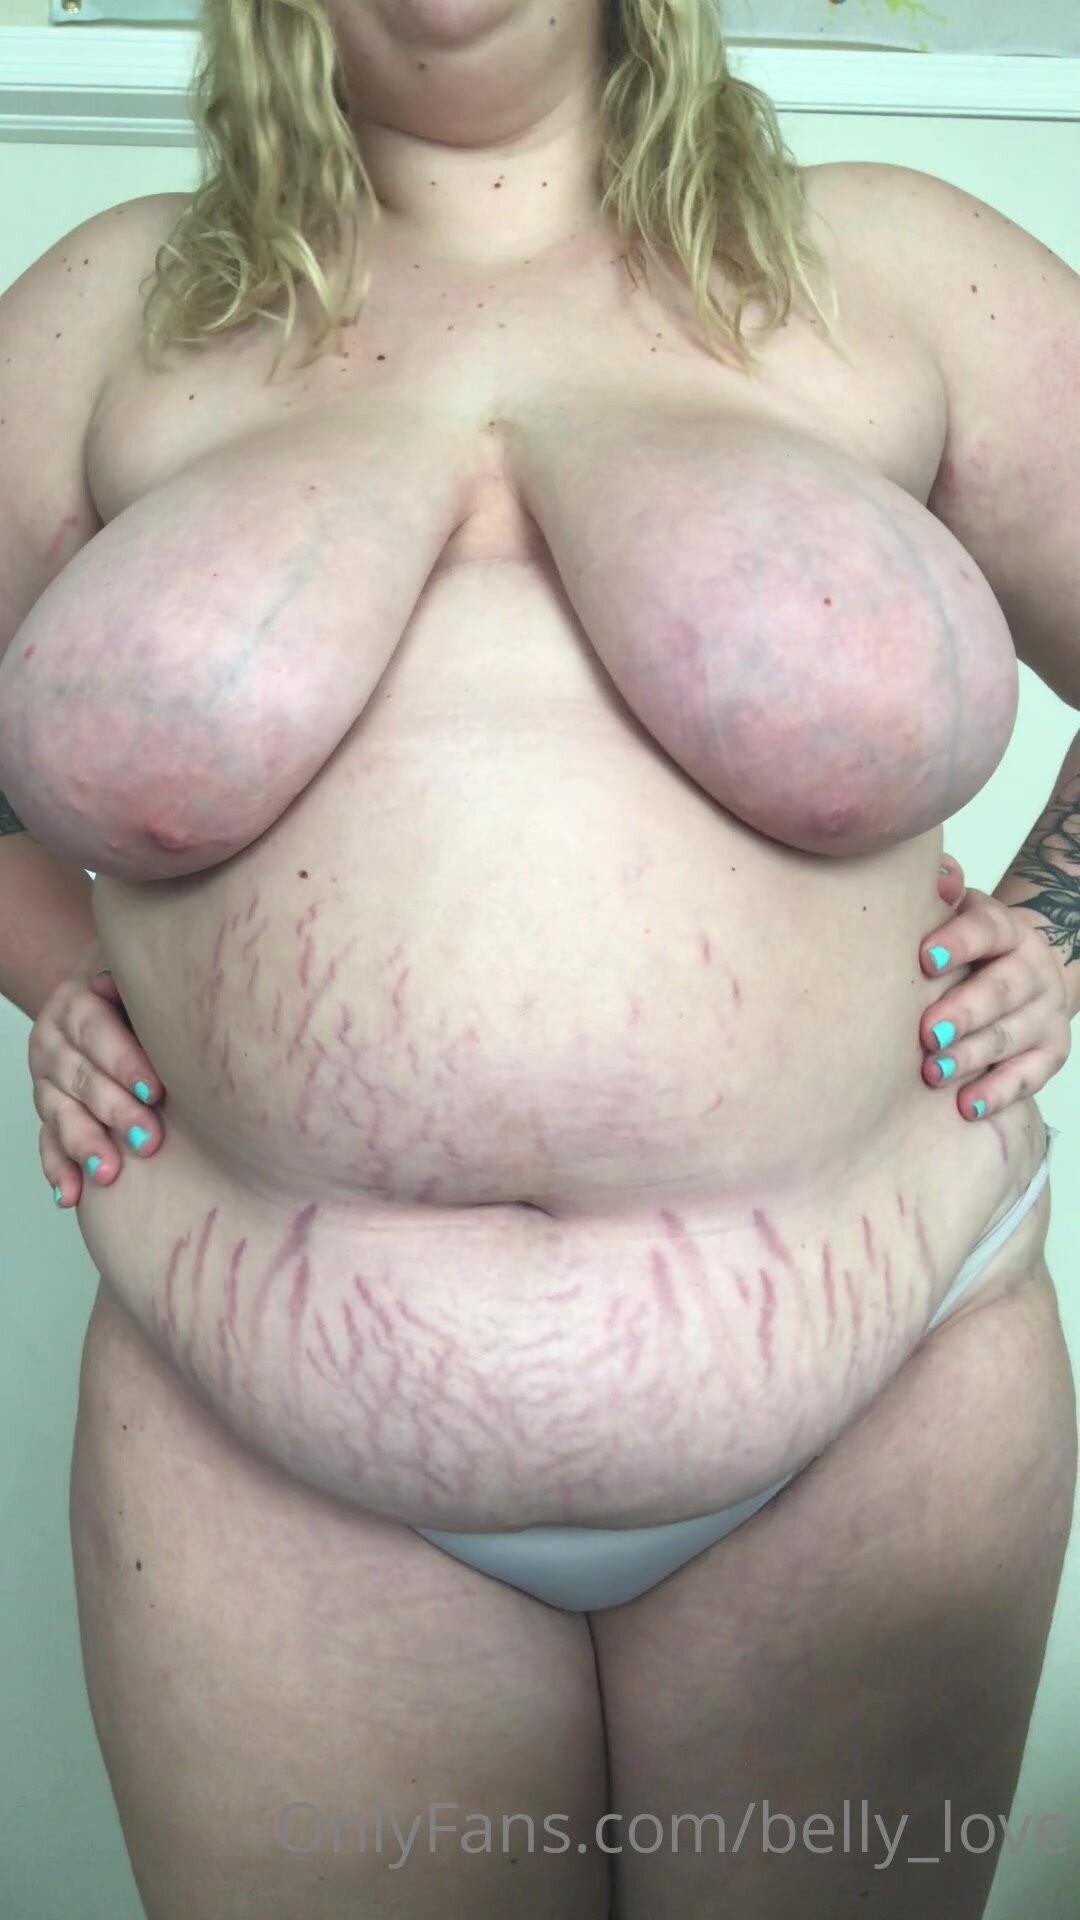 Bbw Girl Porn - Fat girl stretch marks 4 - ThisVid.com